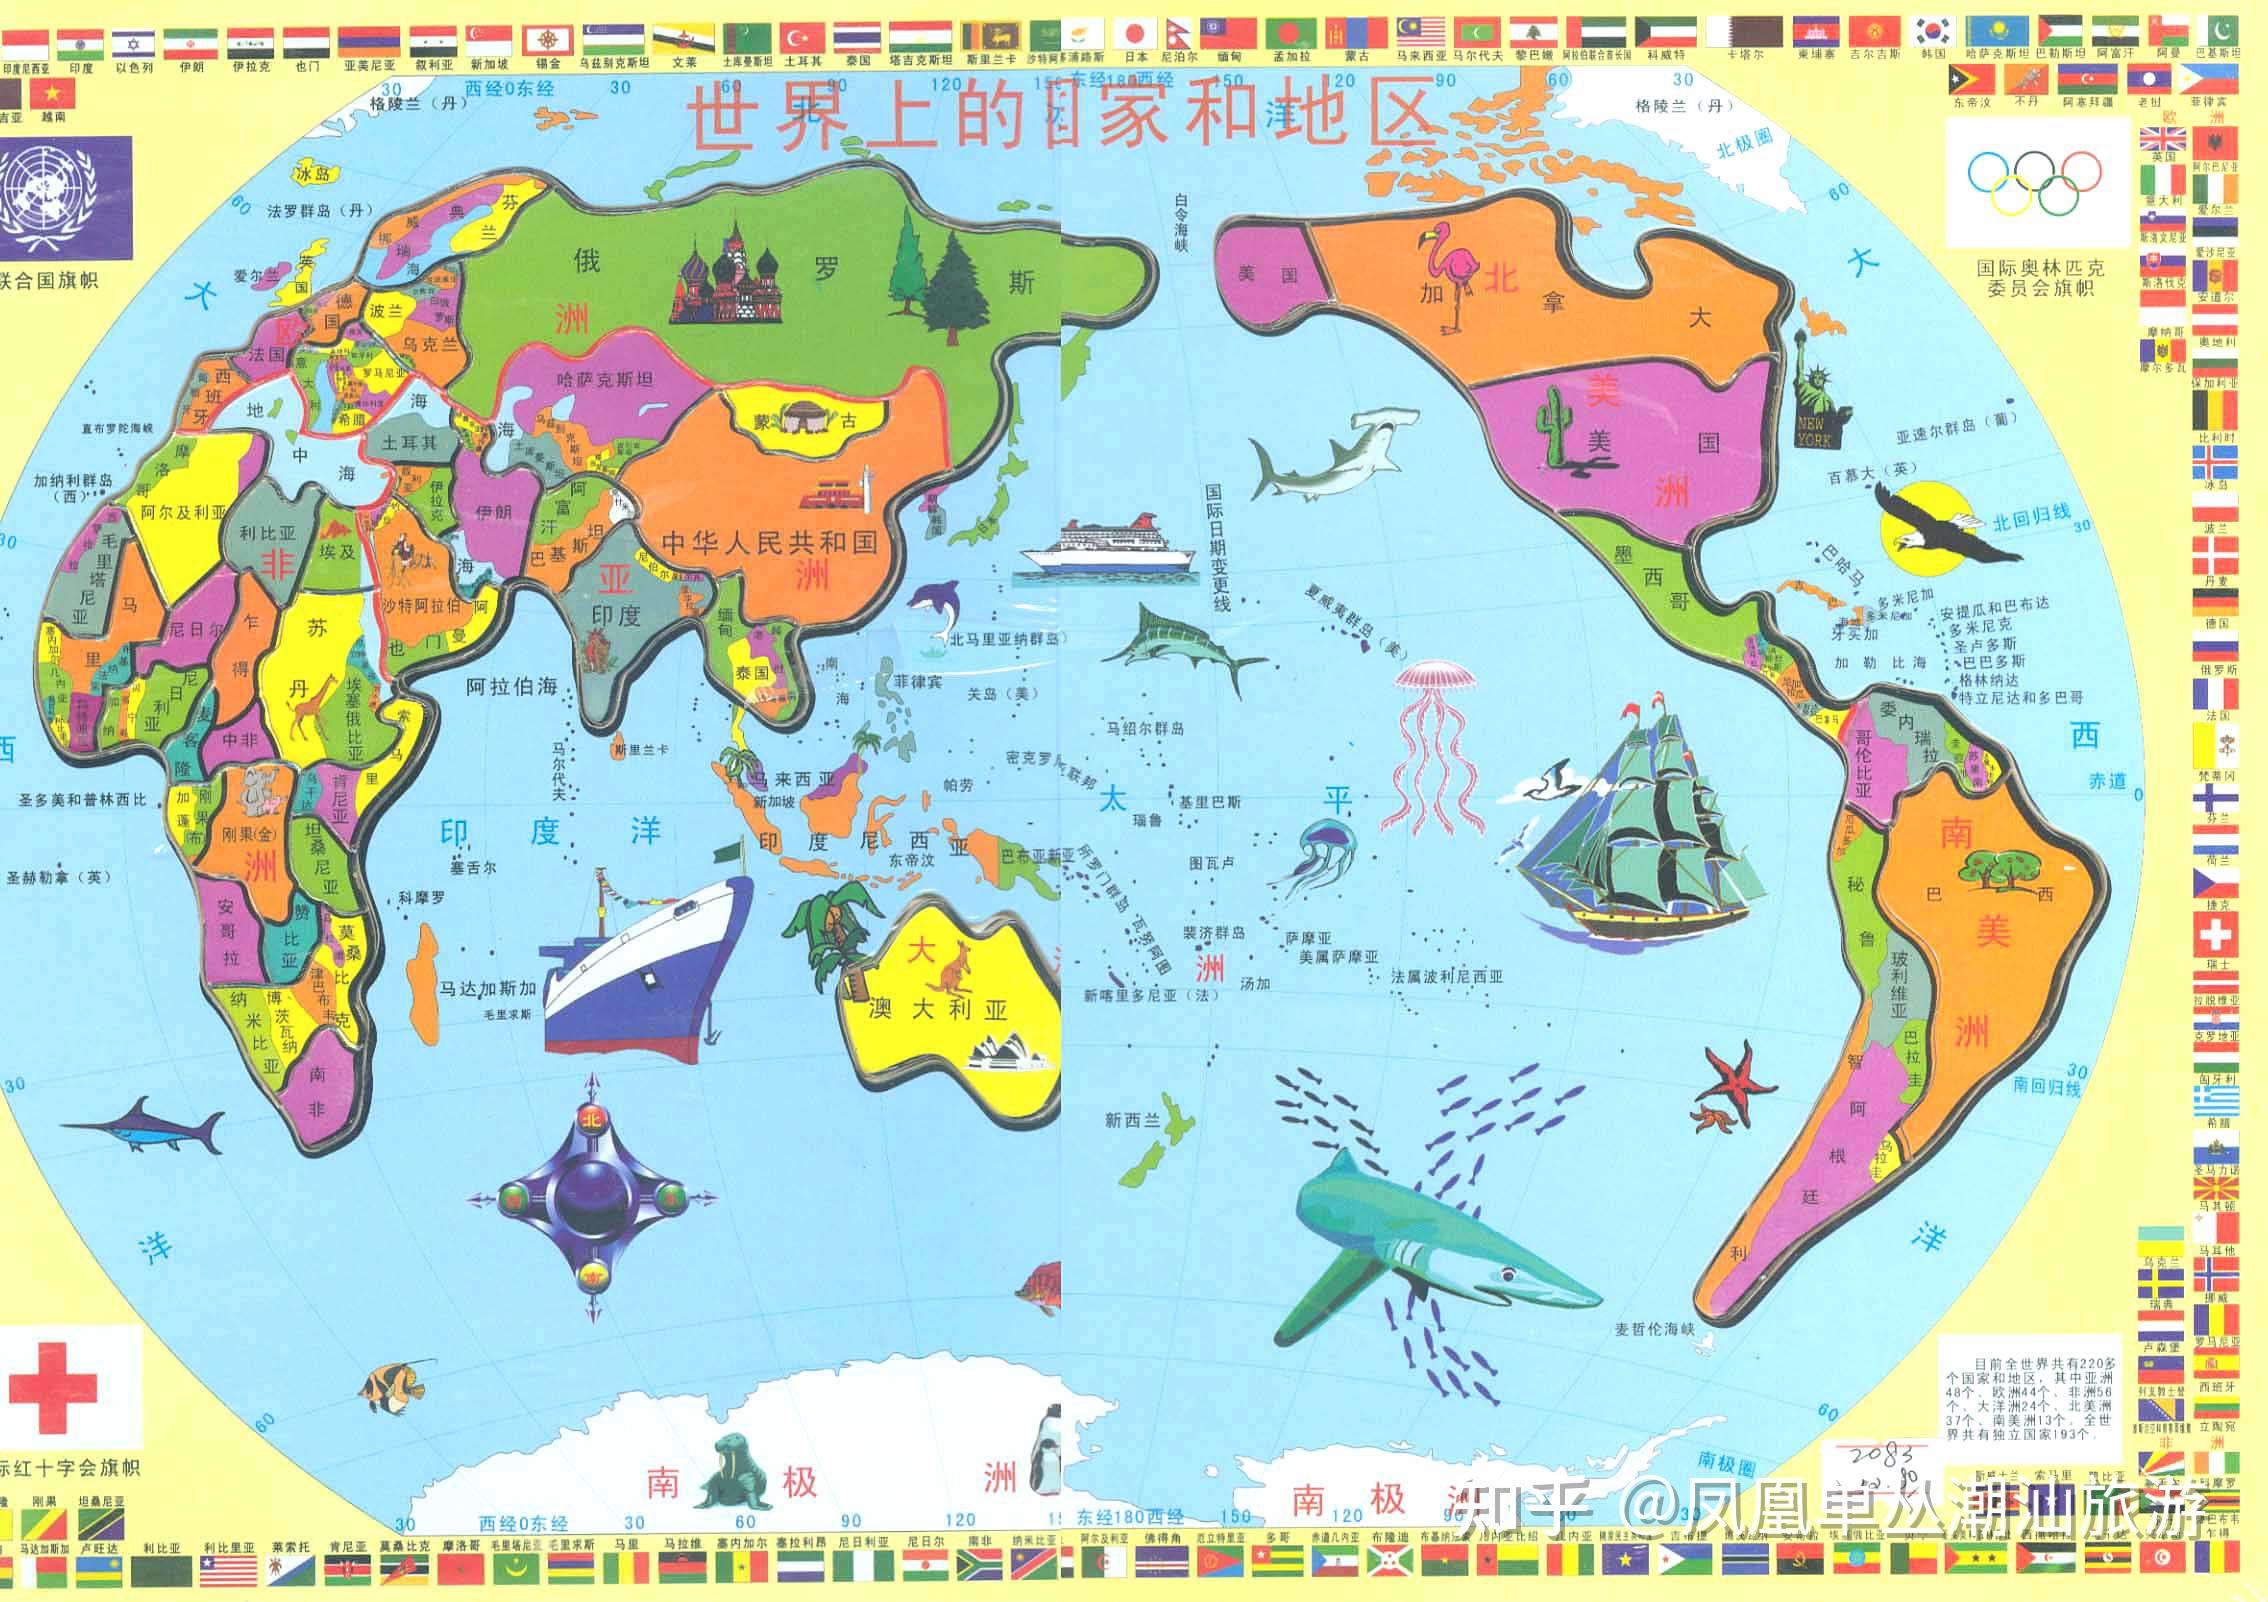 能分享不同国家不同颜色的那种世界地图吗